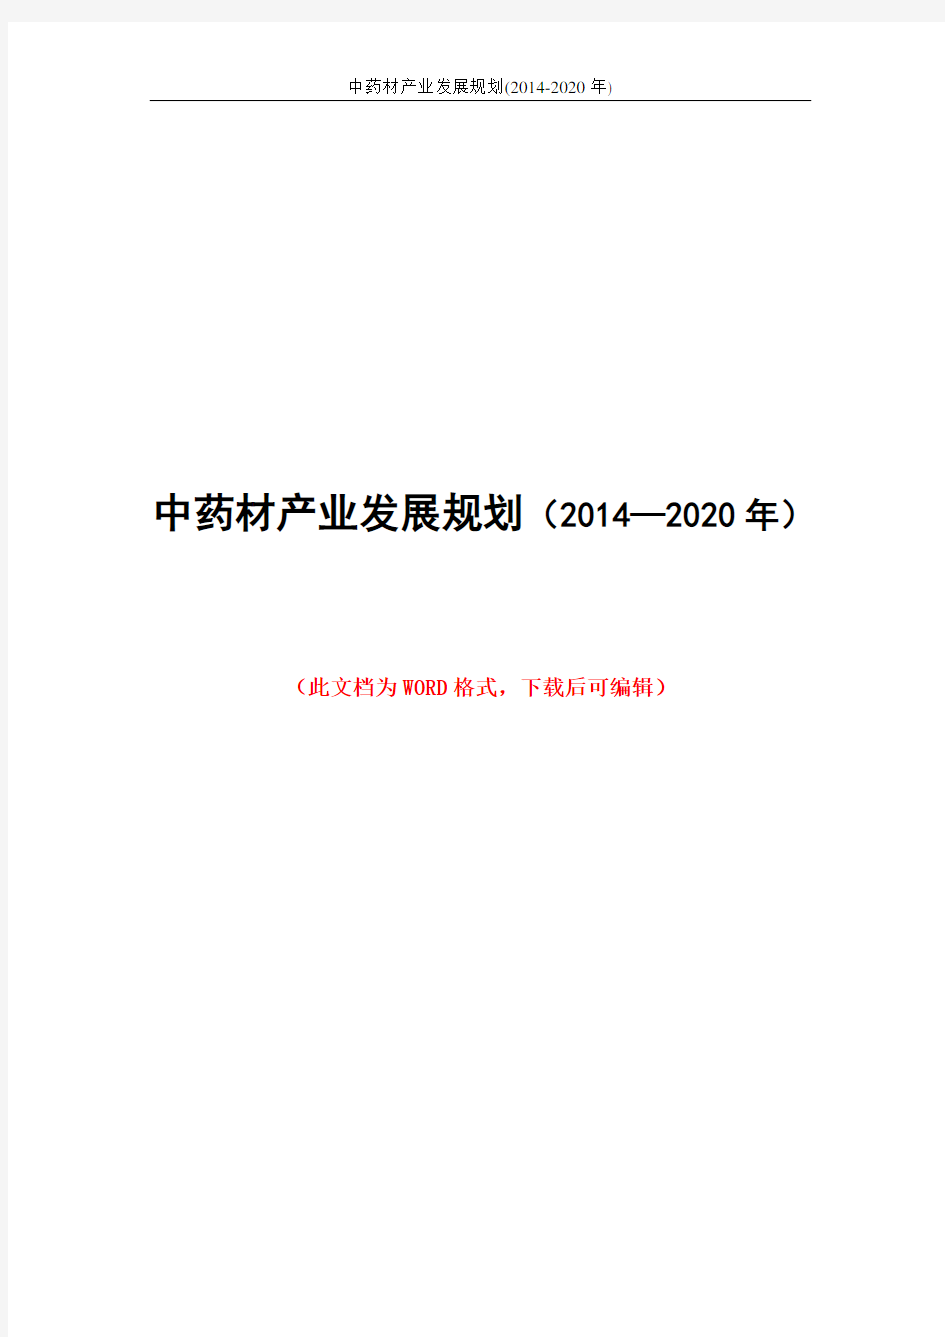 中药材产业发展规划(2014-2020年)